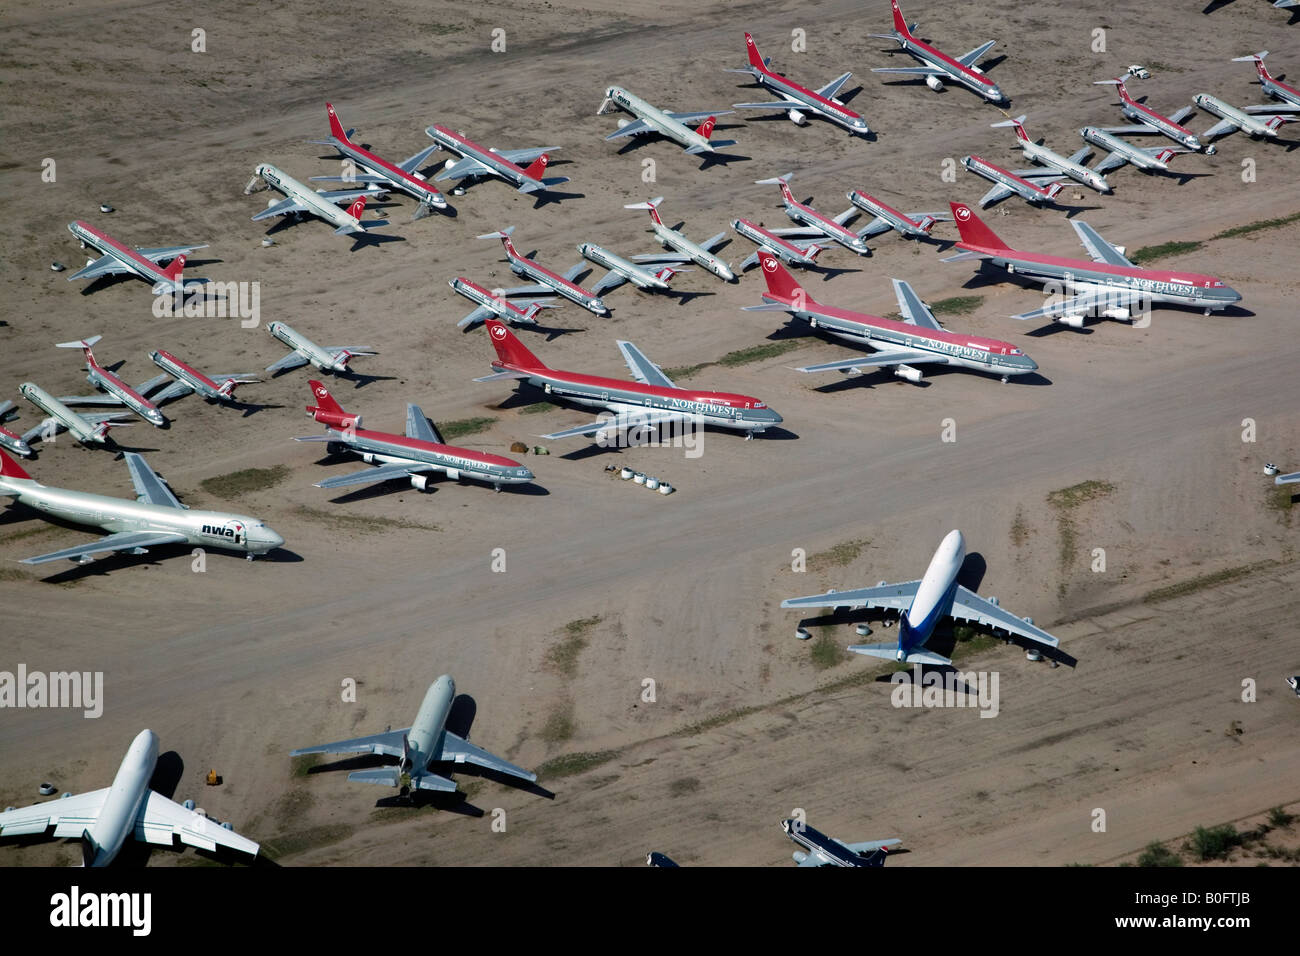 Northwest Airlines antena boneyard aviones fuera de servicio de almacenamiento sin usar Tucson Arizona Foto de stock